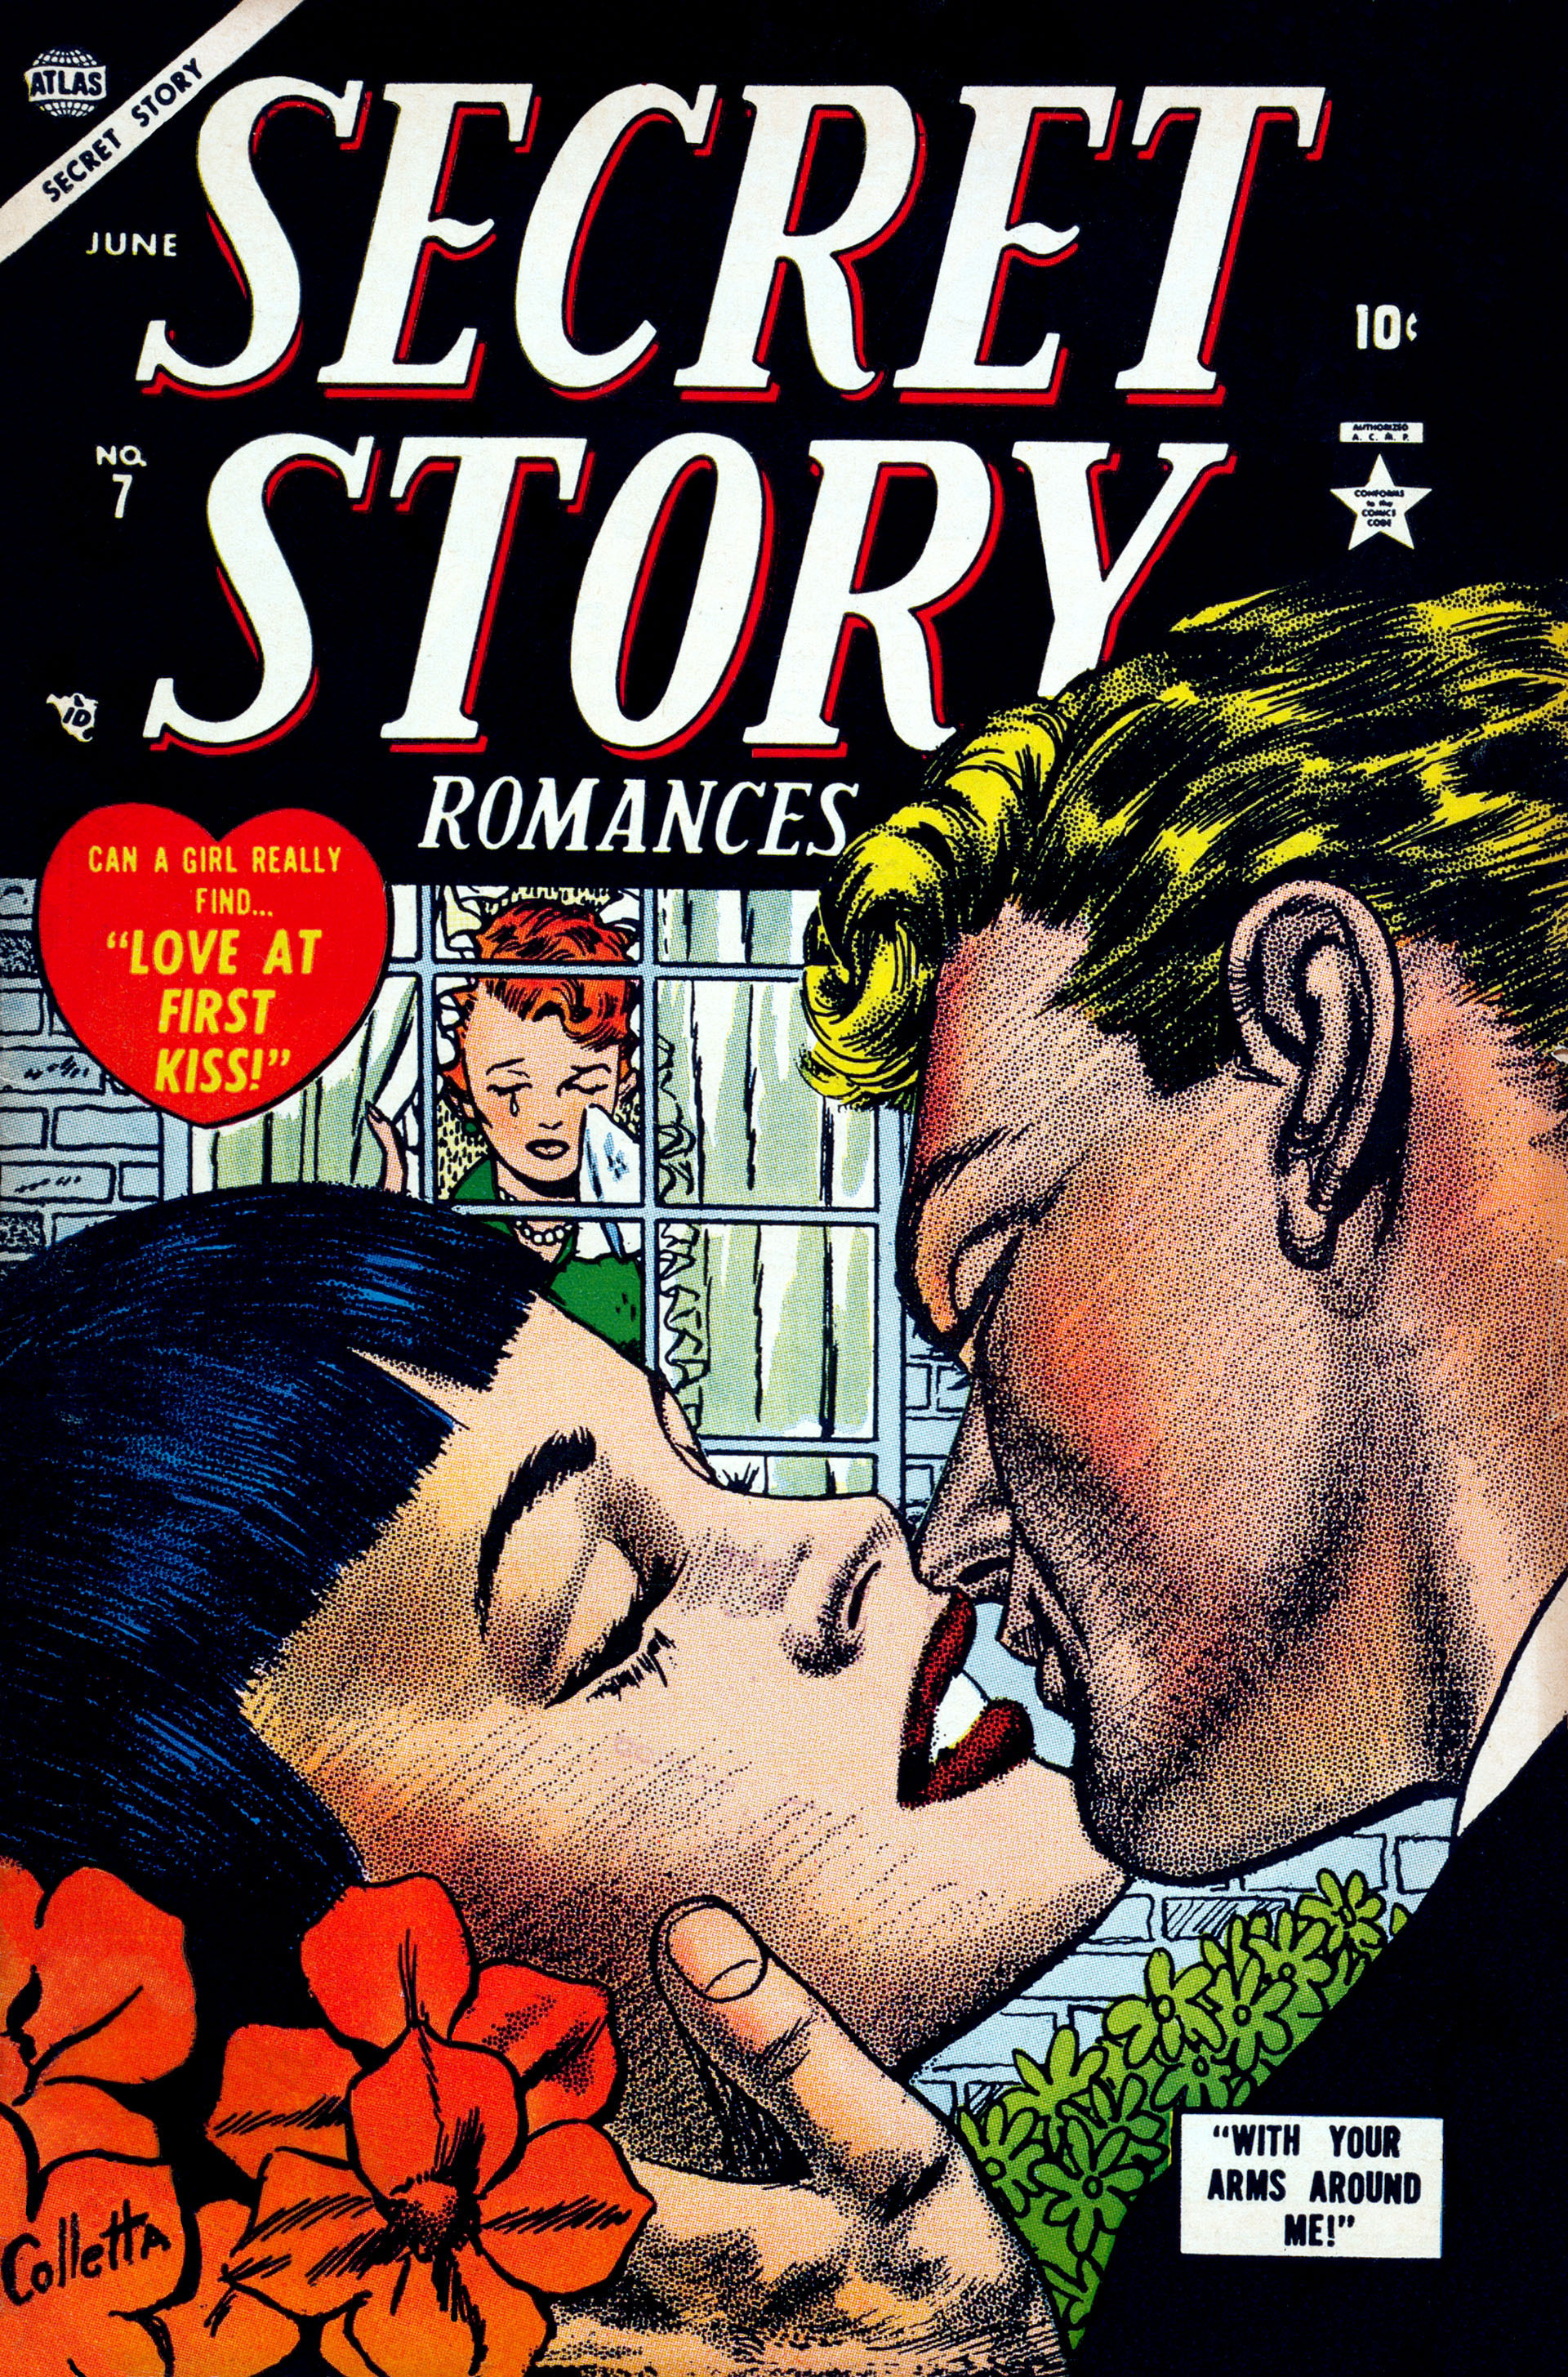 Read online Secret Story Romances comic -  Issue #7 - 1